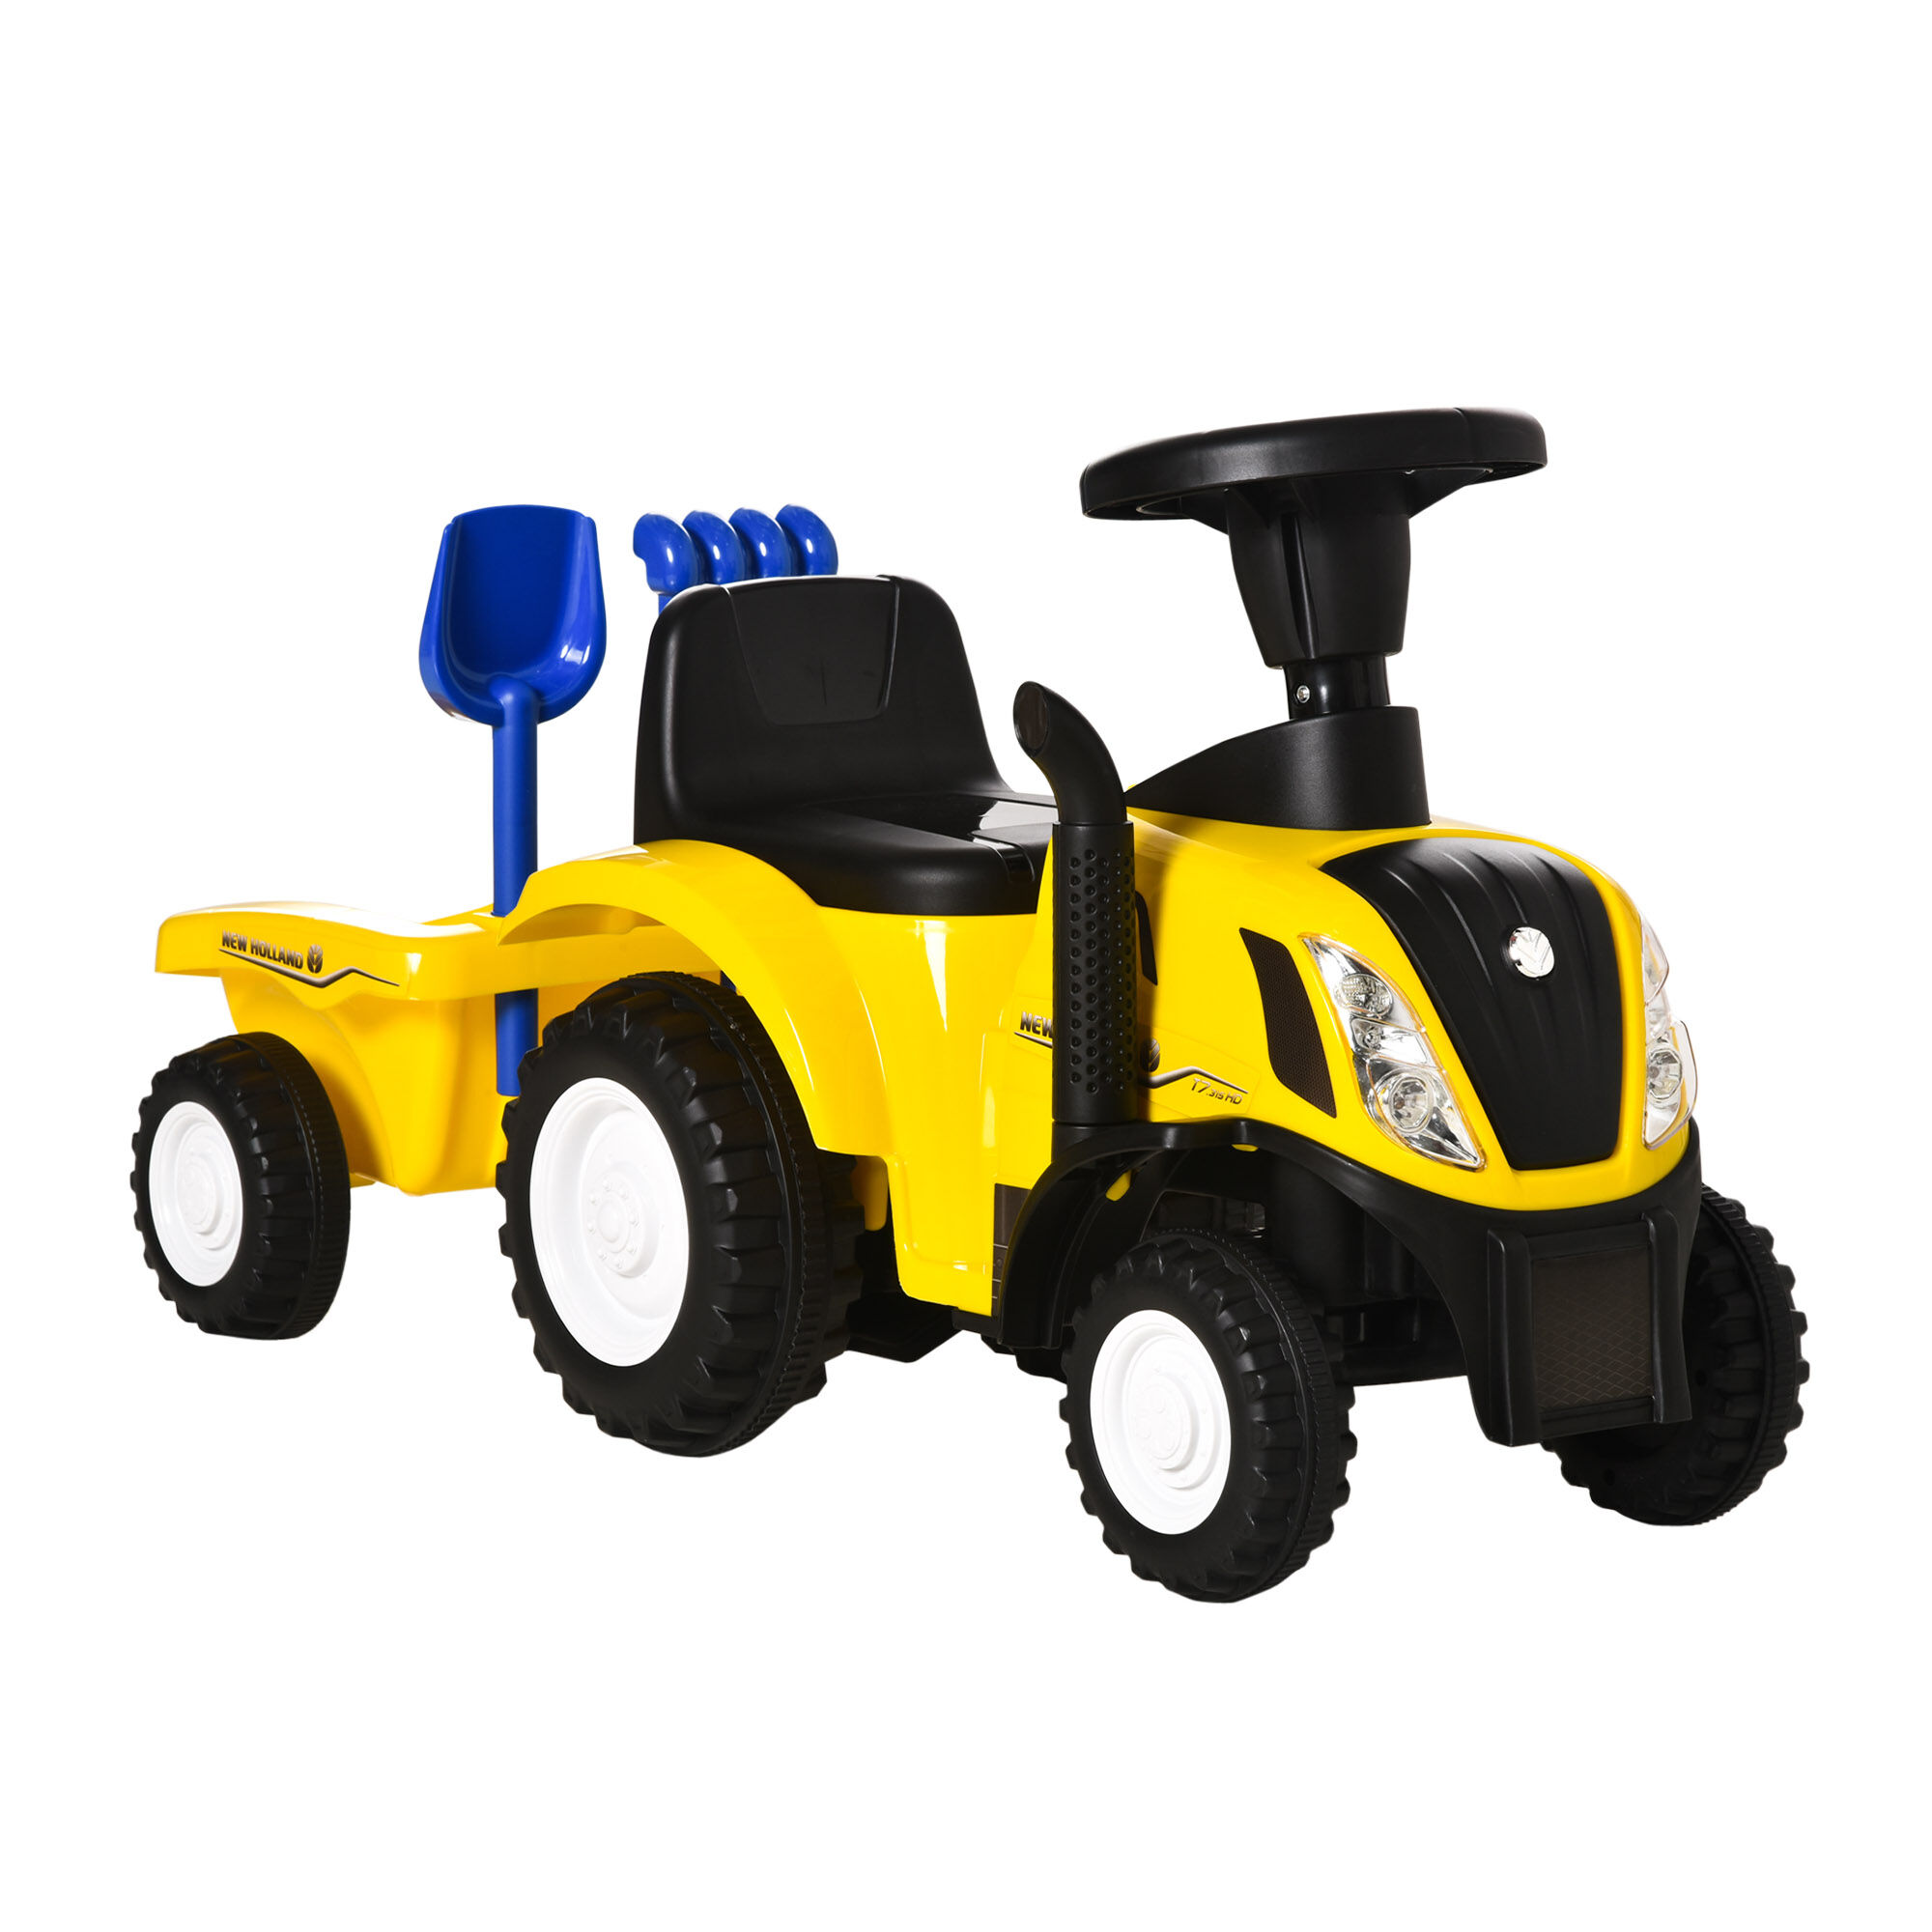 homcom trattore per bambini cavalcabile con rimorchio, rastrello e pala, gioco educativo per bimbi 12-36 mesi, 91x29x44cm, giallo